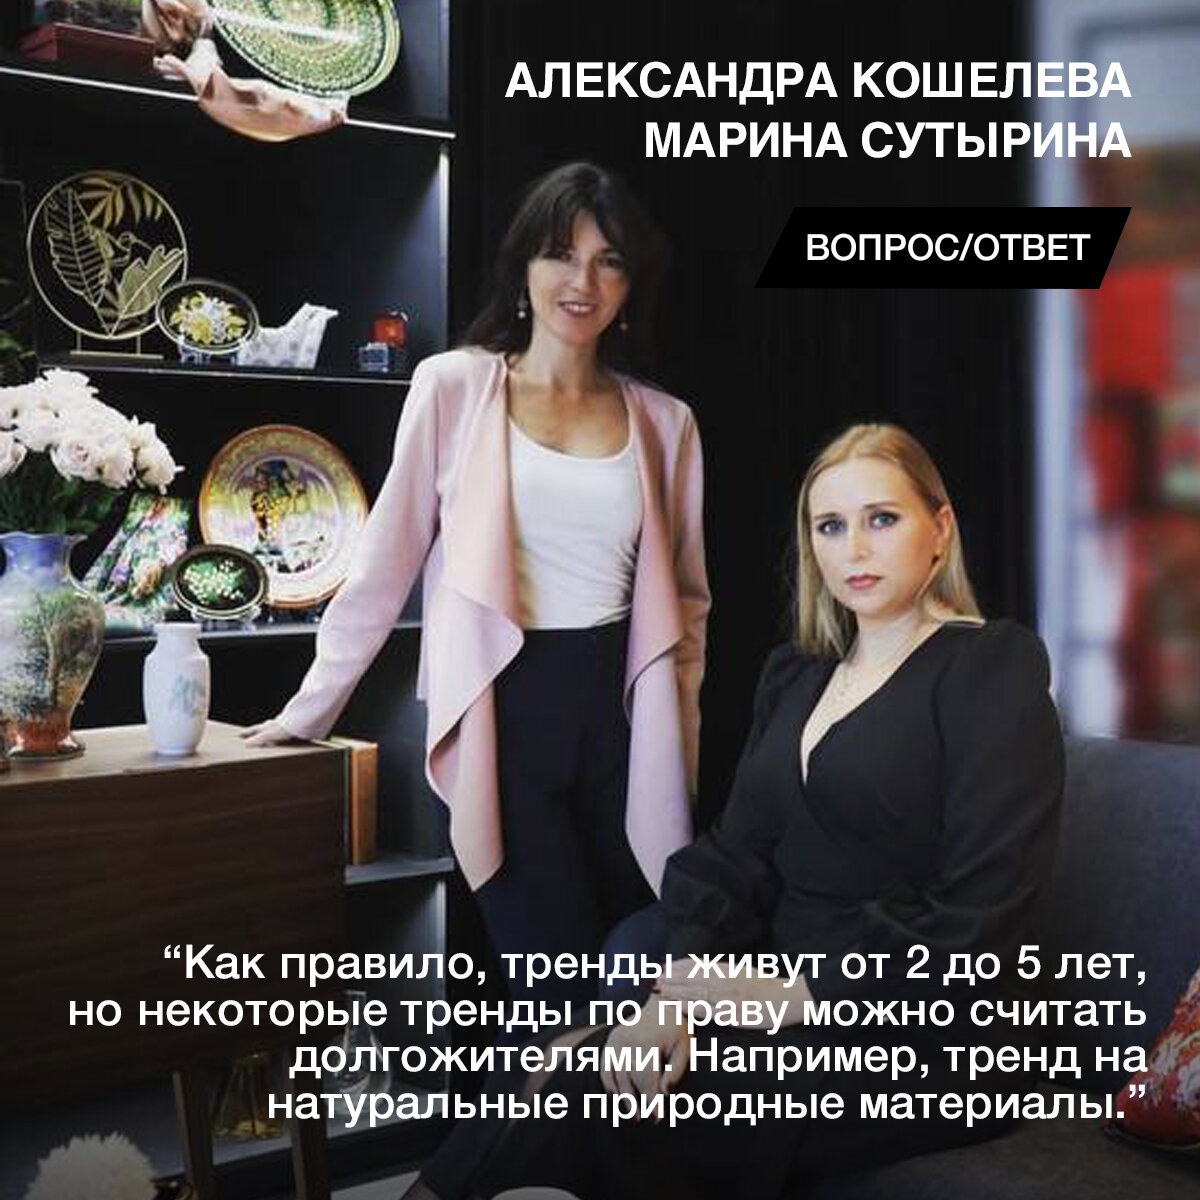 На наши вопросы о трендах и предметах интерьера вне времени ответили Александра Кошелева и Марина Сутырина